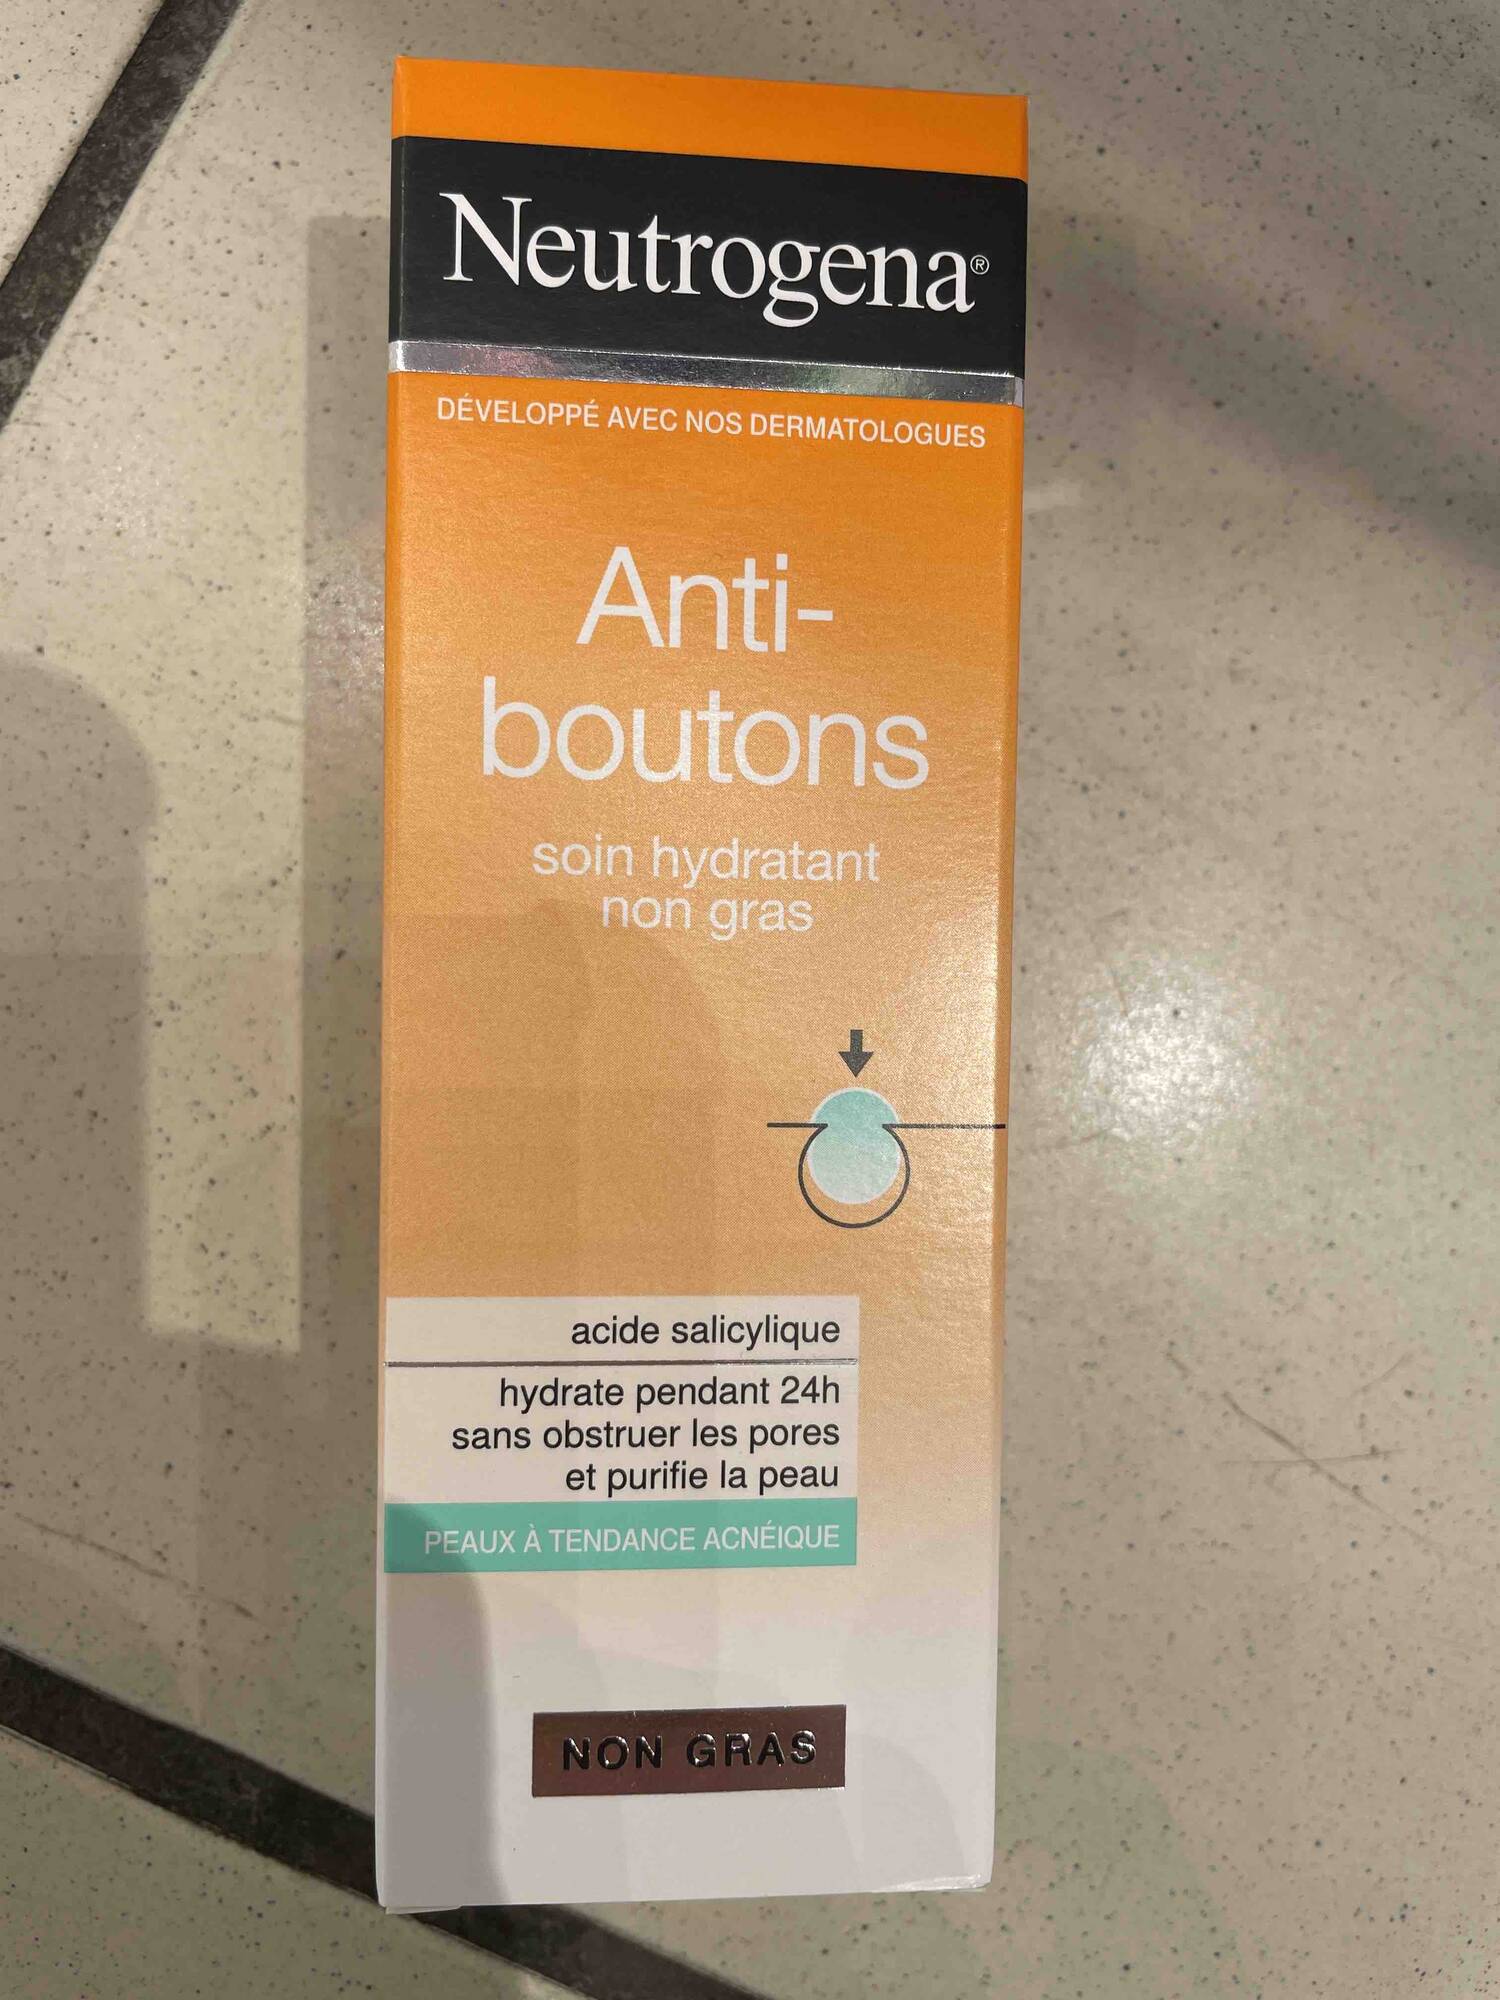 NEUTROGENA - Anti-boutons soin hydratant non gras